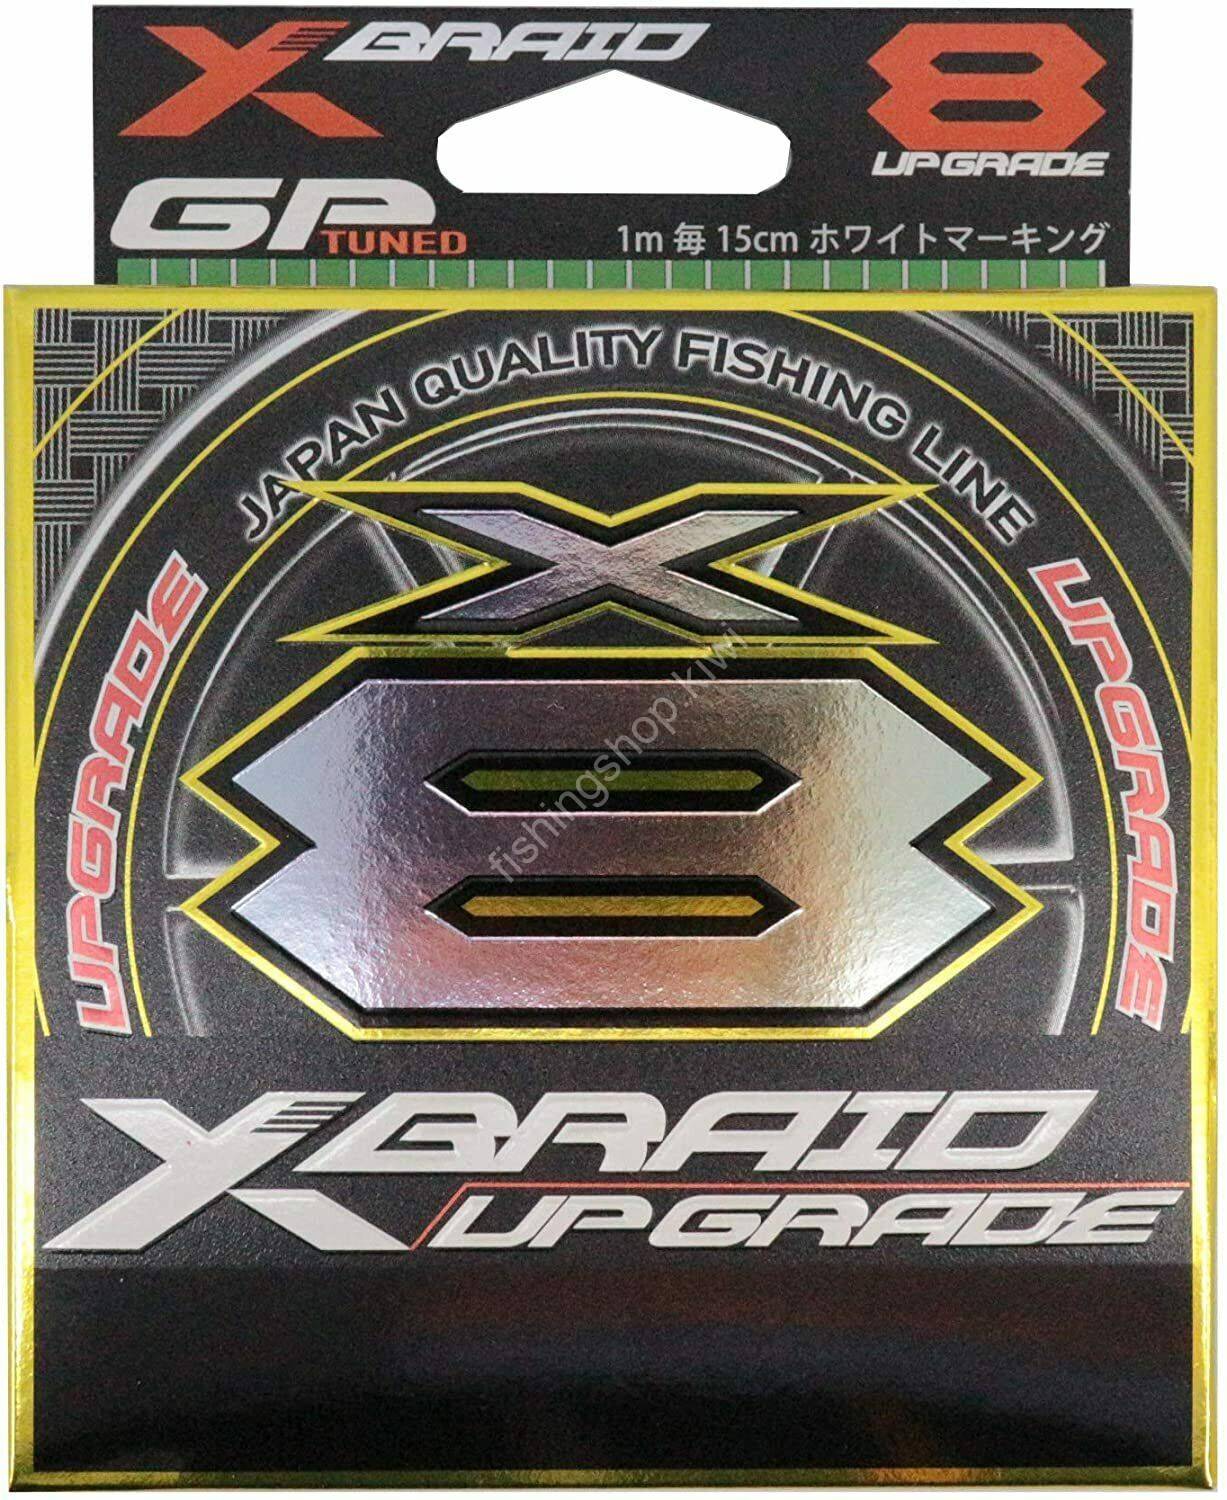 YGK XBRAID UPGRADE X8 Braided Line